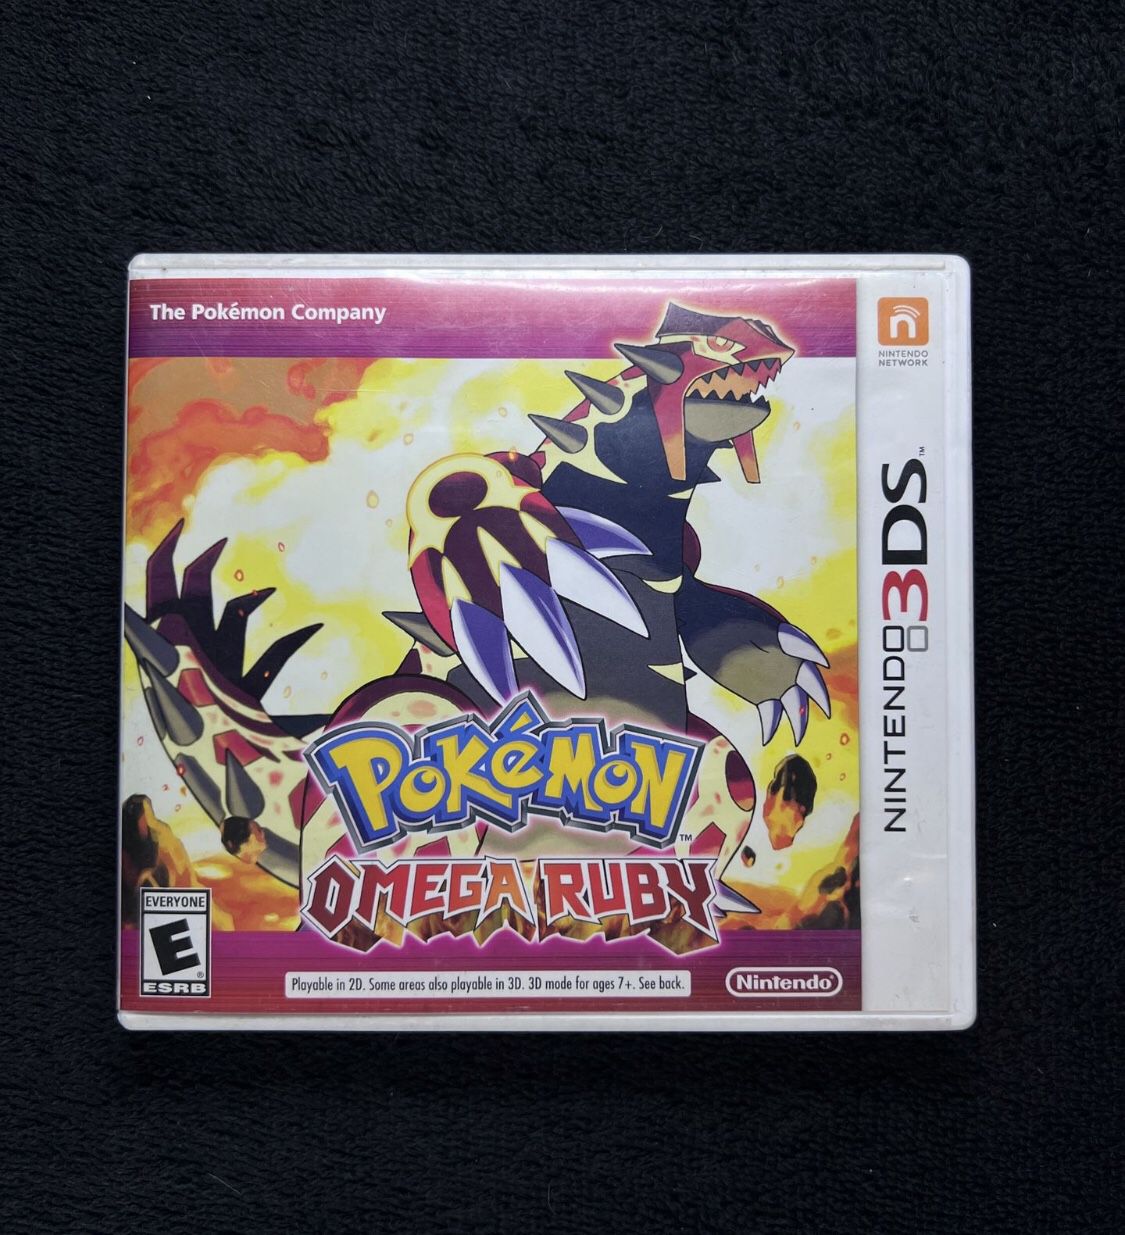 Pokémon Omega Ruby 